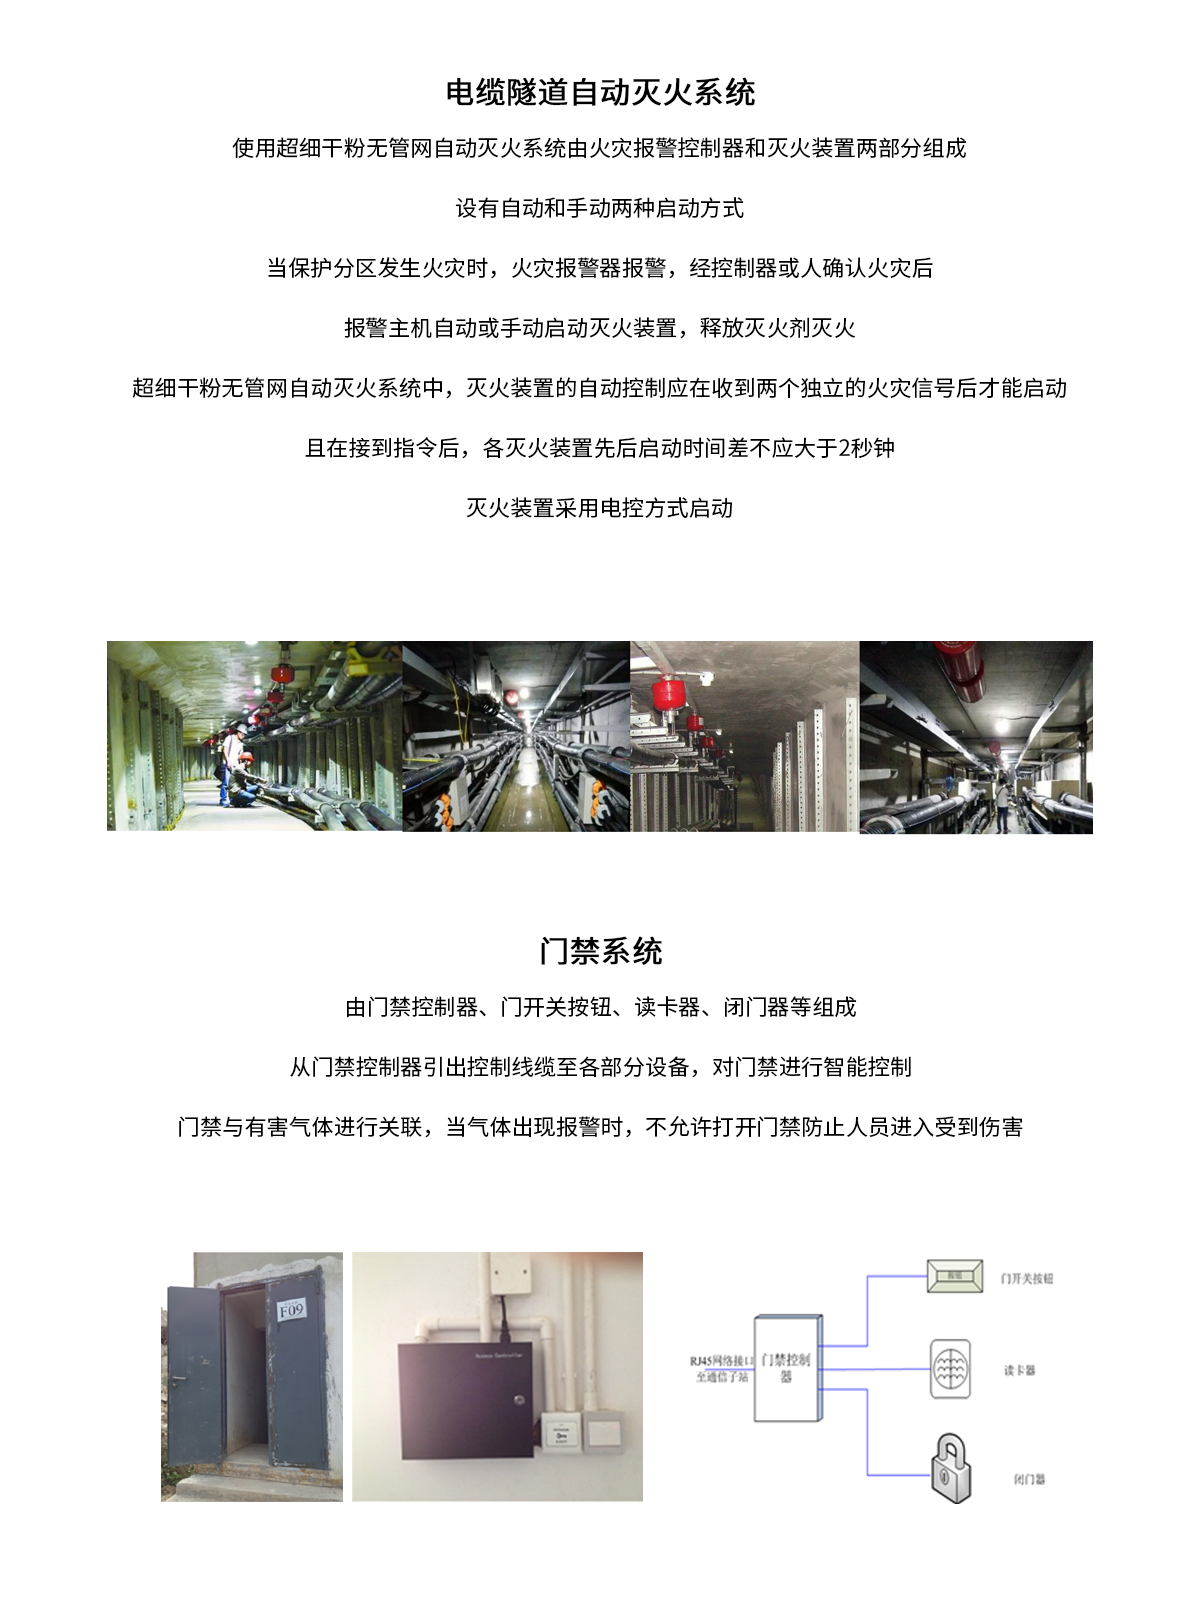 山东德州天衢-广川220kV电缆隧道项目—电缆隧道04.png